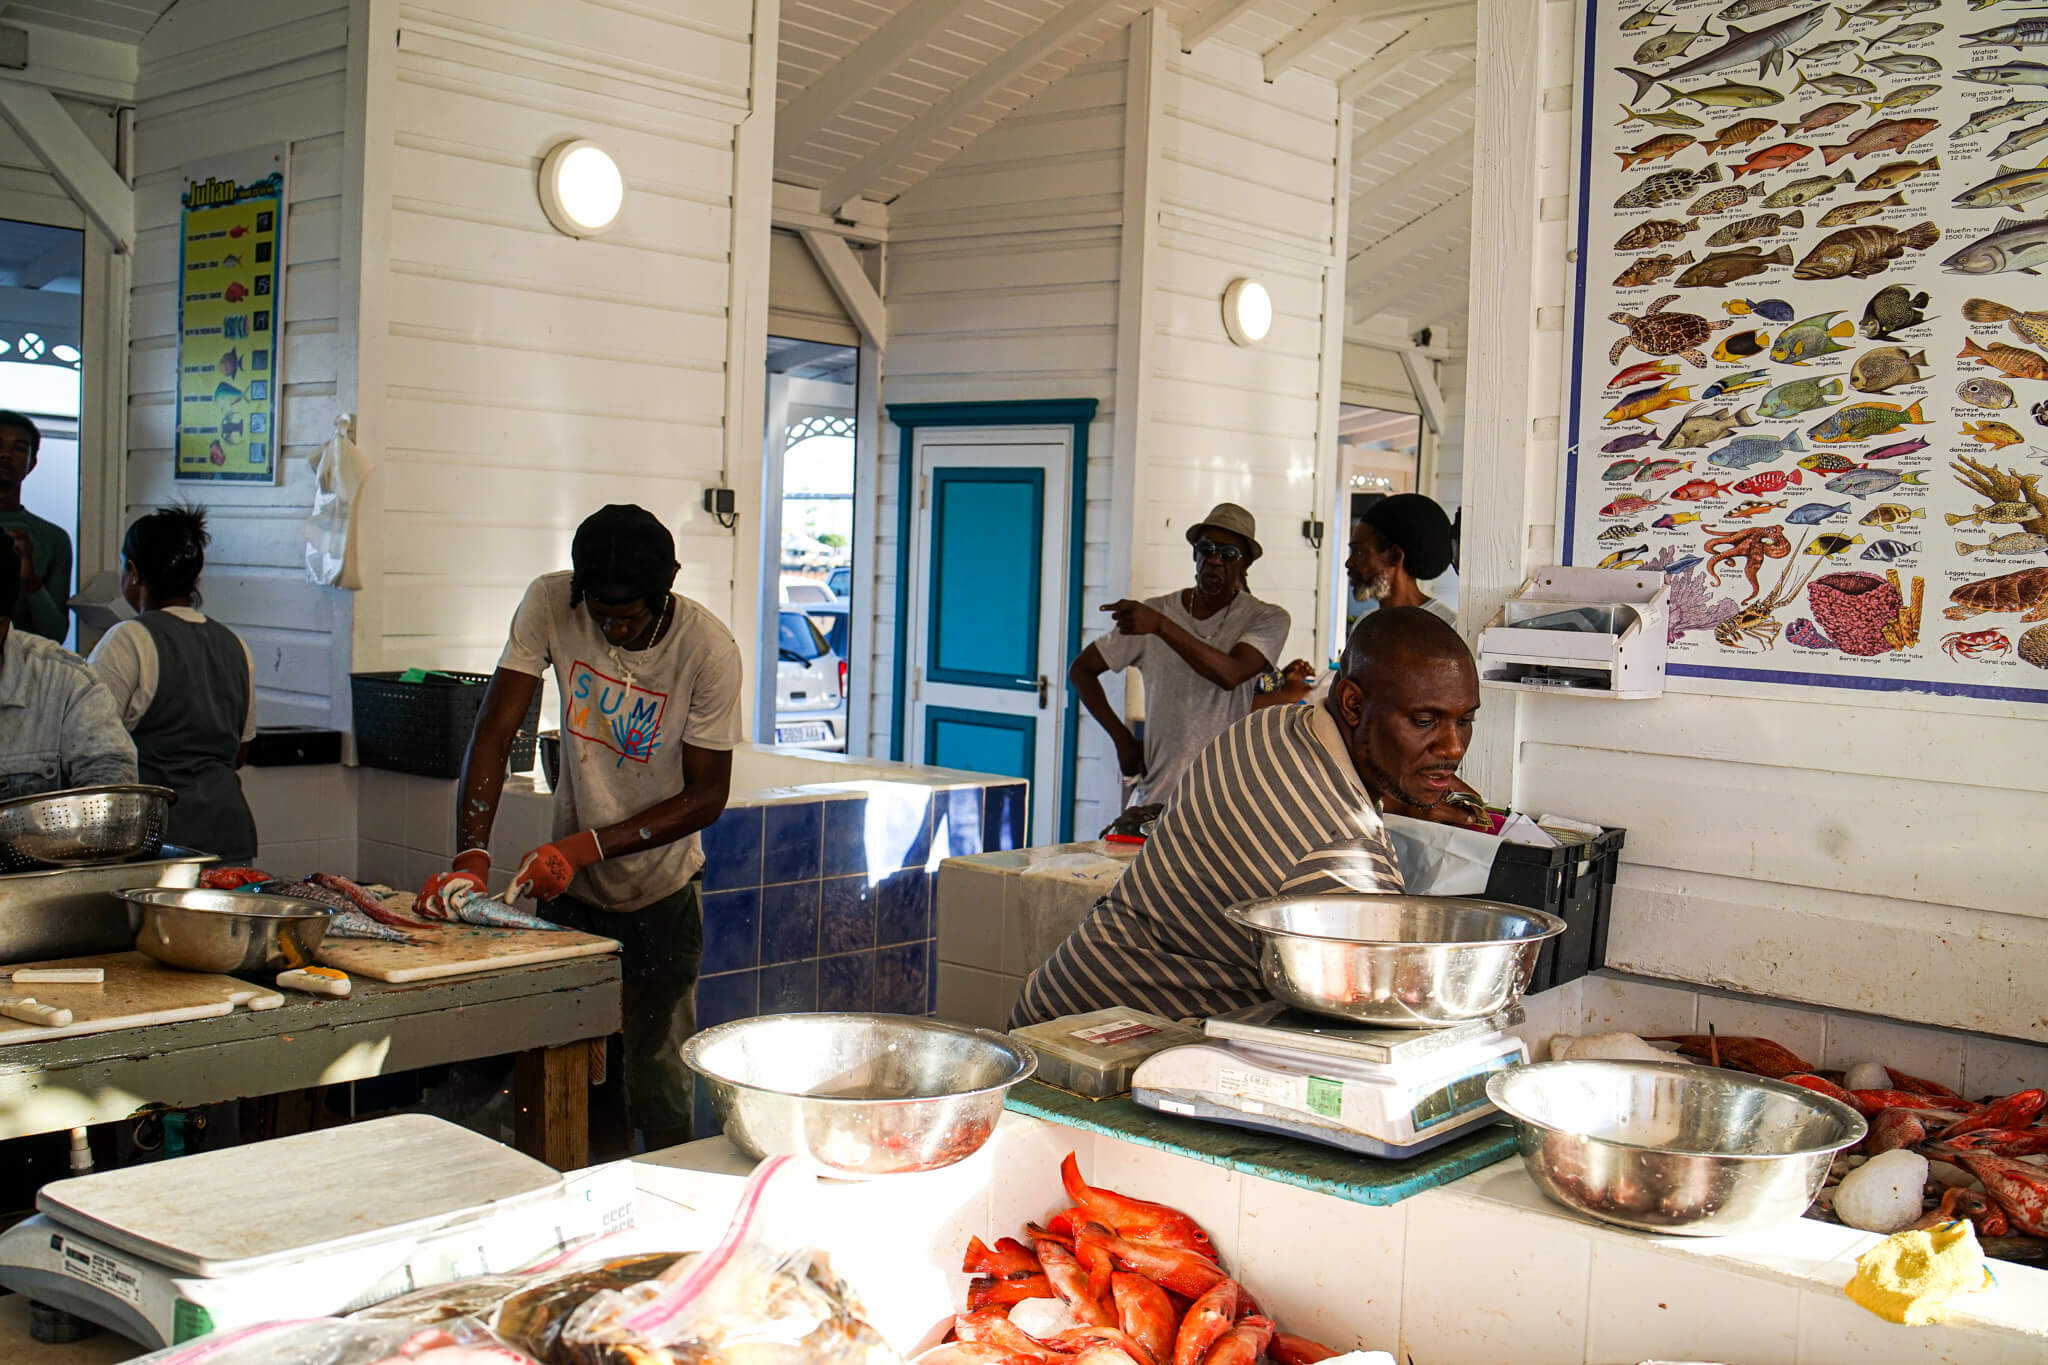 Markt in Marigot, Saint Martin - Stand mit Fisch